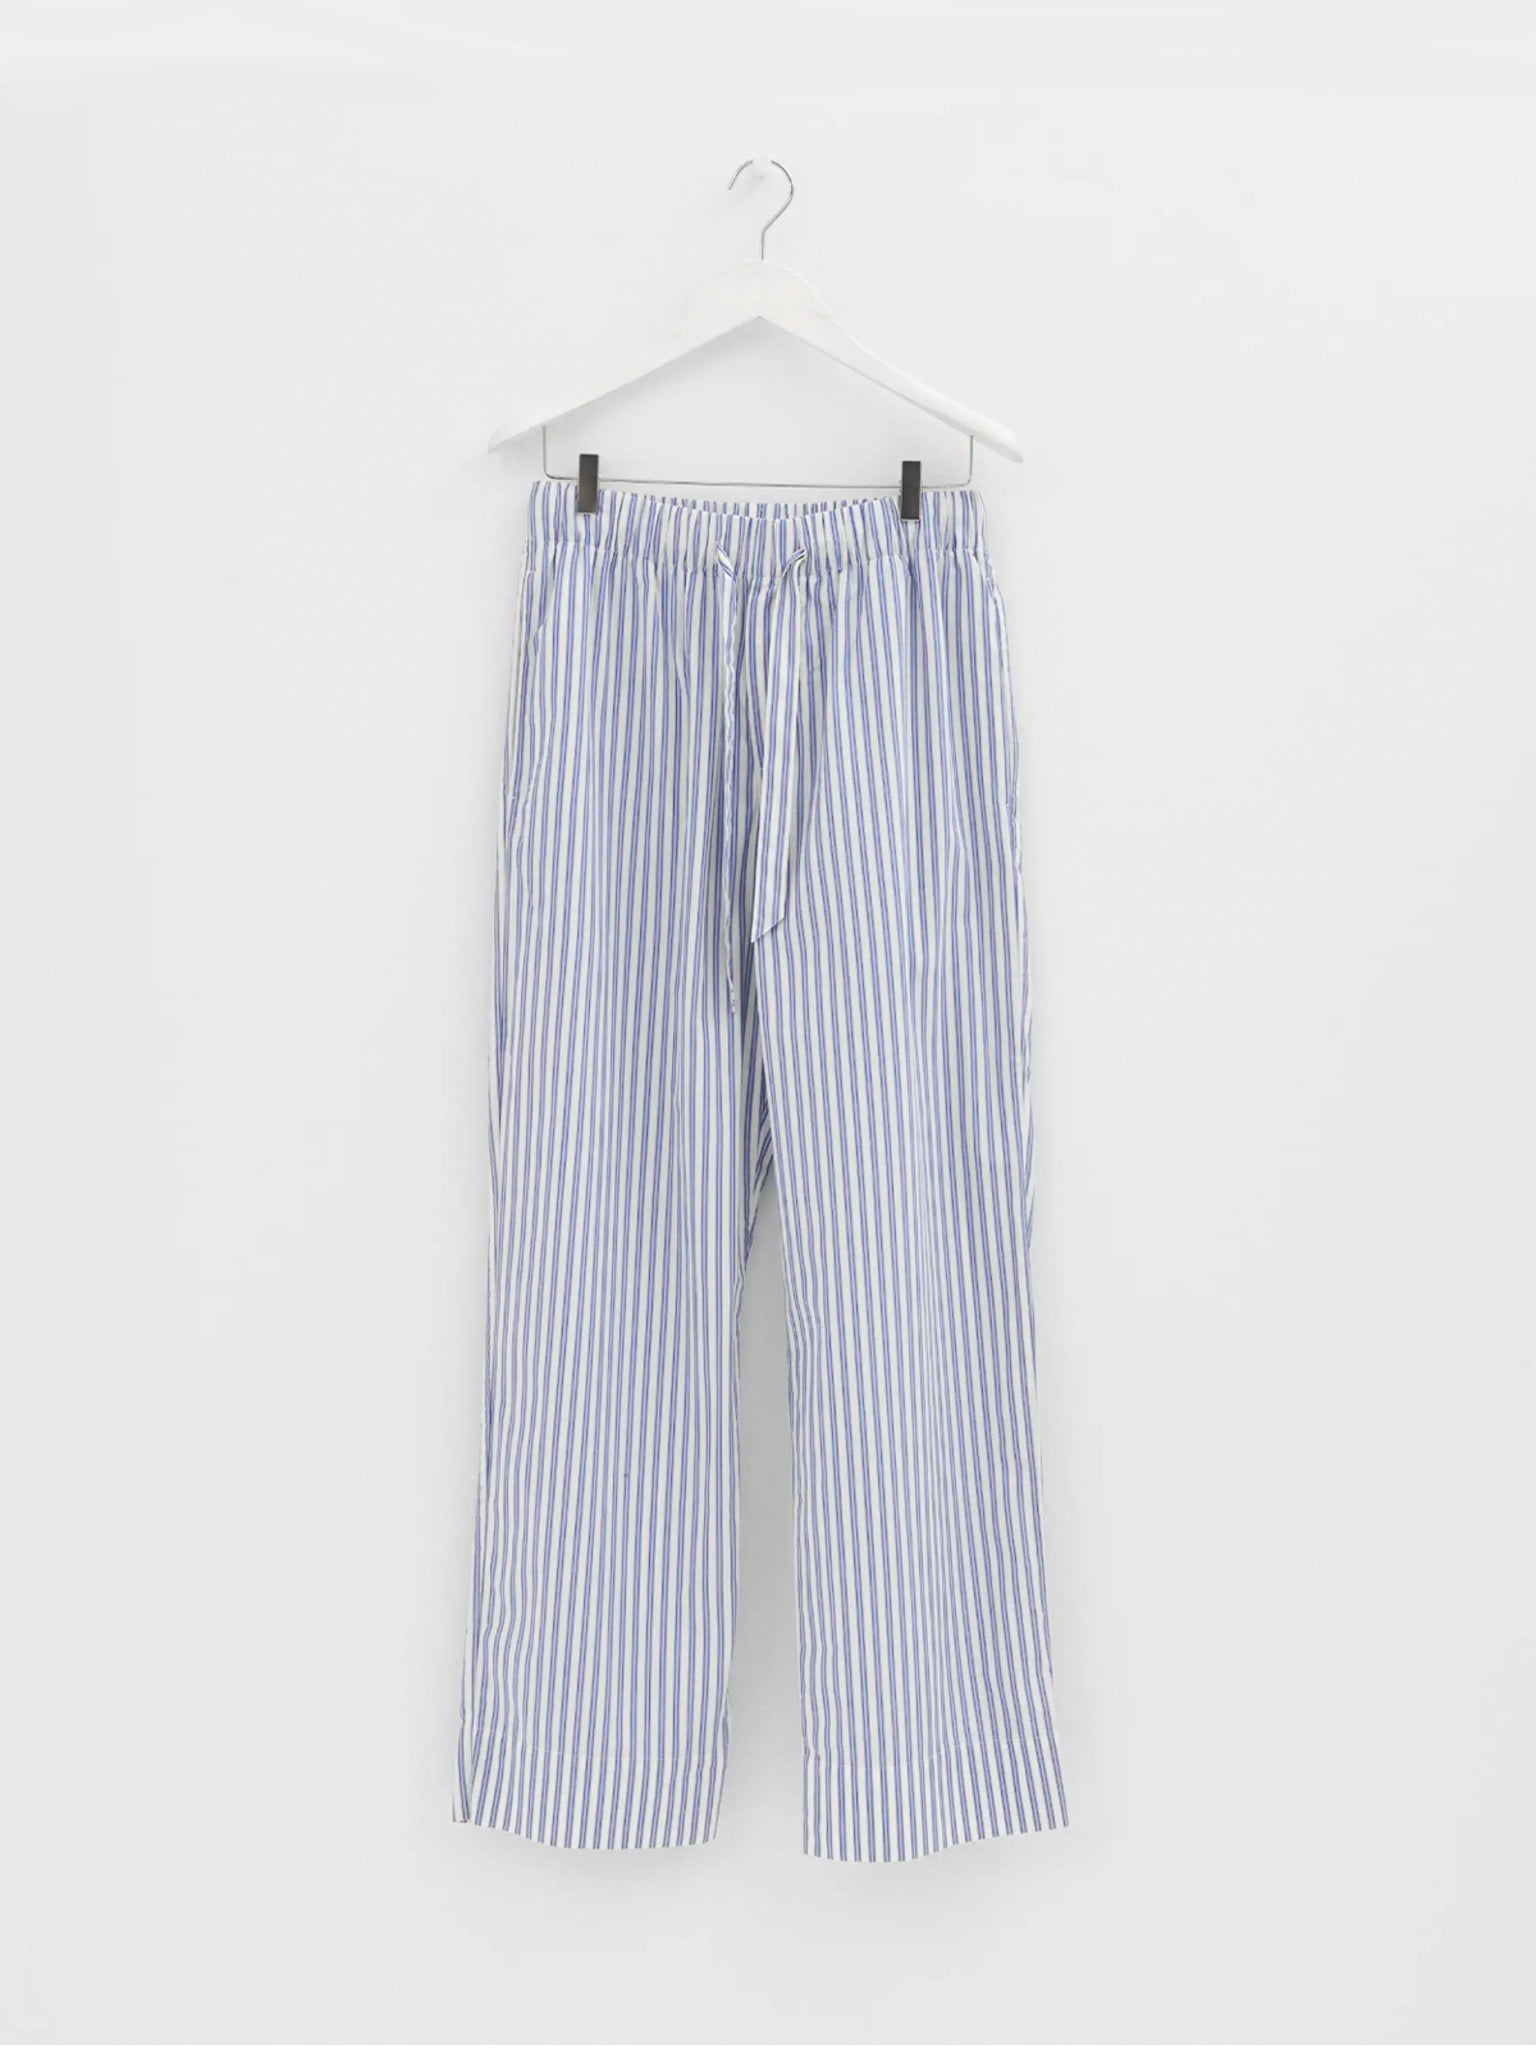 Tekla - Poplin Pyjamas Pants in Skagen Stripes